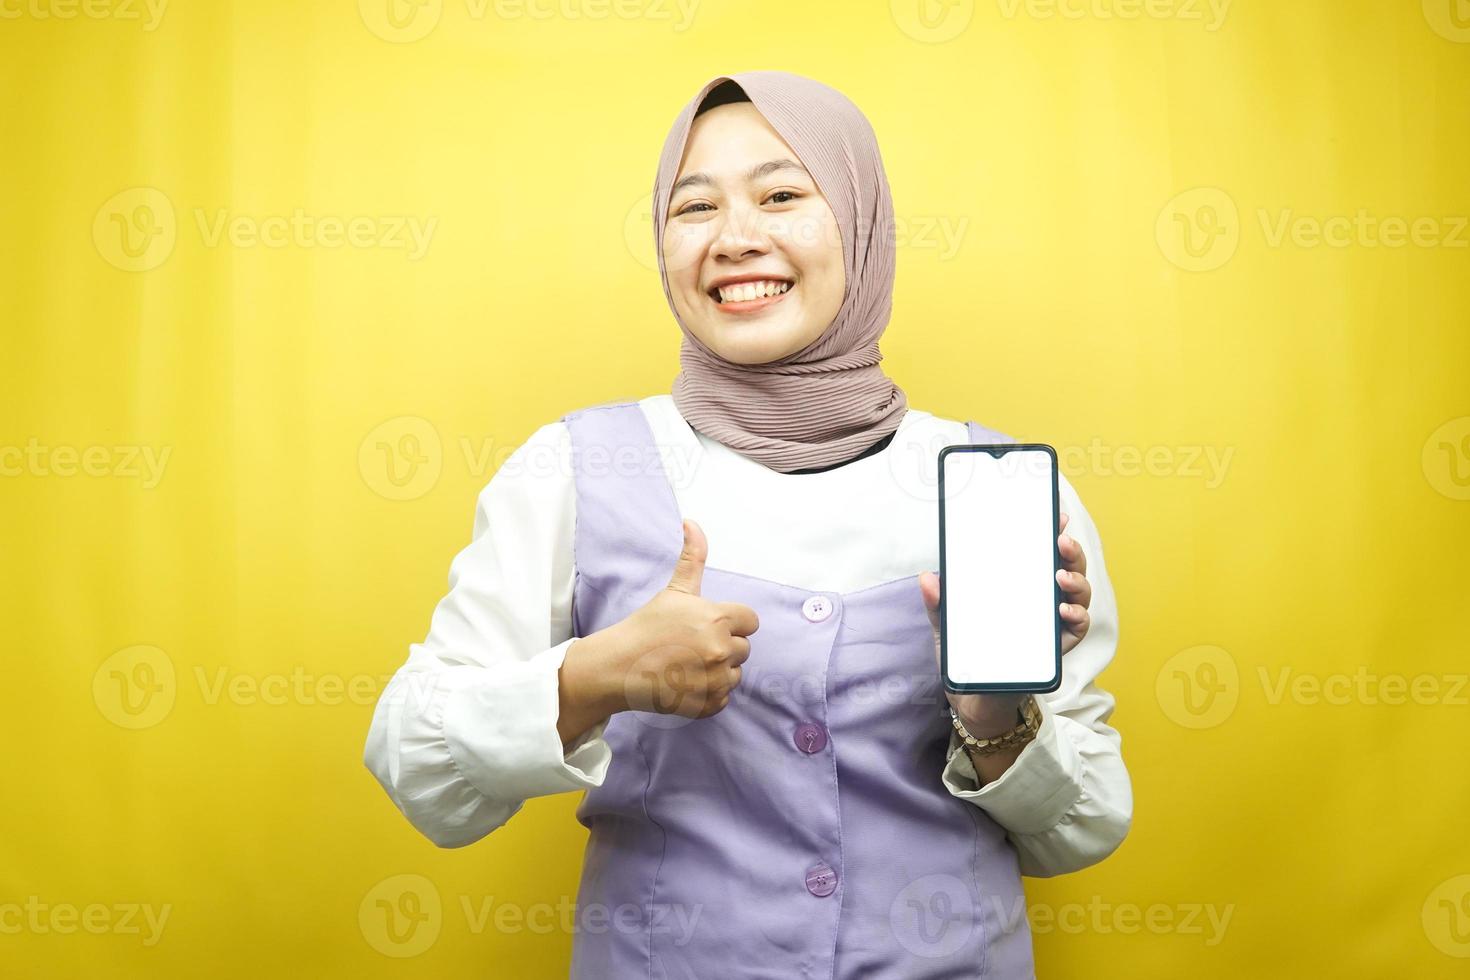 Schöne junge asiatische muslimische Frau, die selbstbewusst und aufgeregt mit den Händen lächelt, die Smartphone halten, Bewerbung fördern, OK-Zeichen-Hand, gute Arbeit, Erfolg, isoliert auf gelbem Hintergrund foto